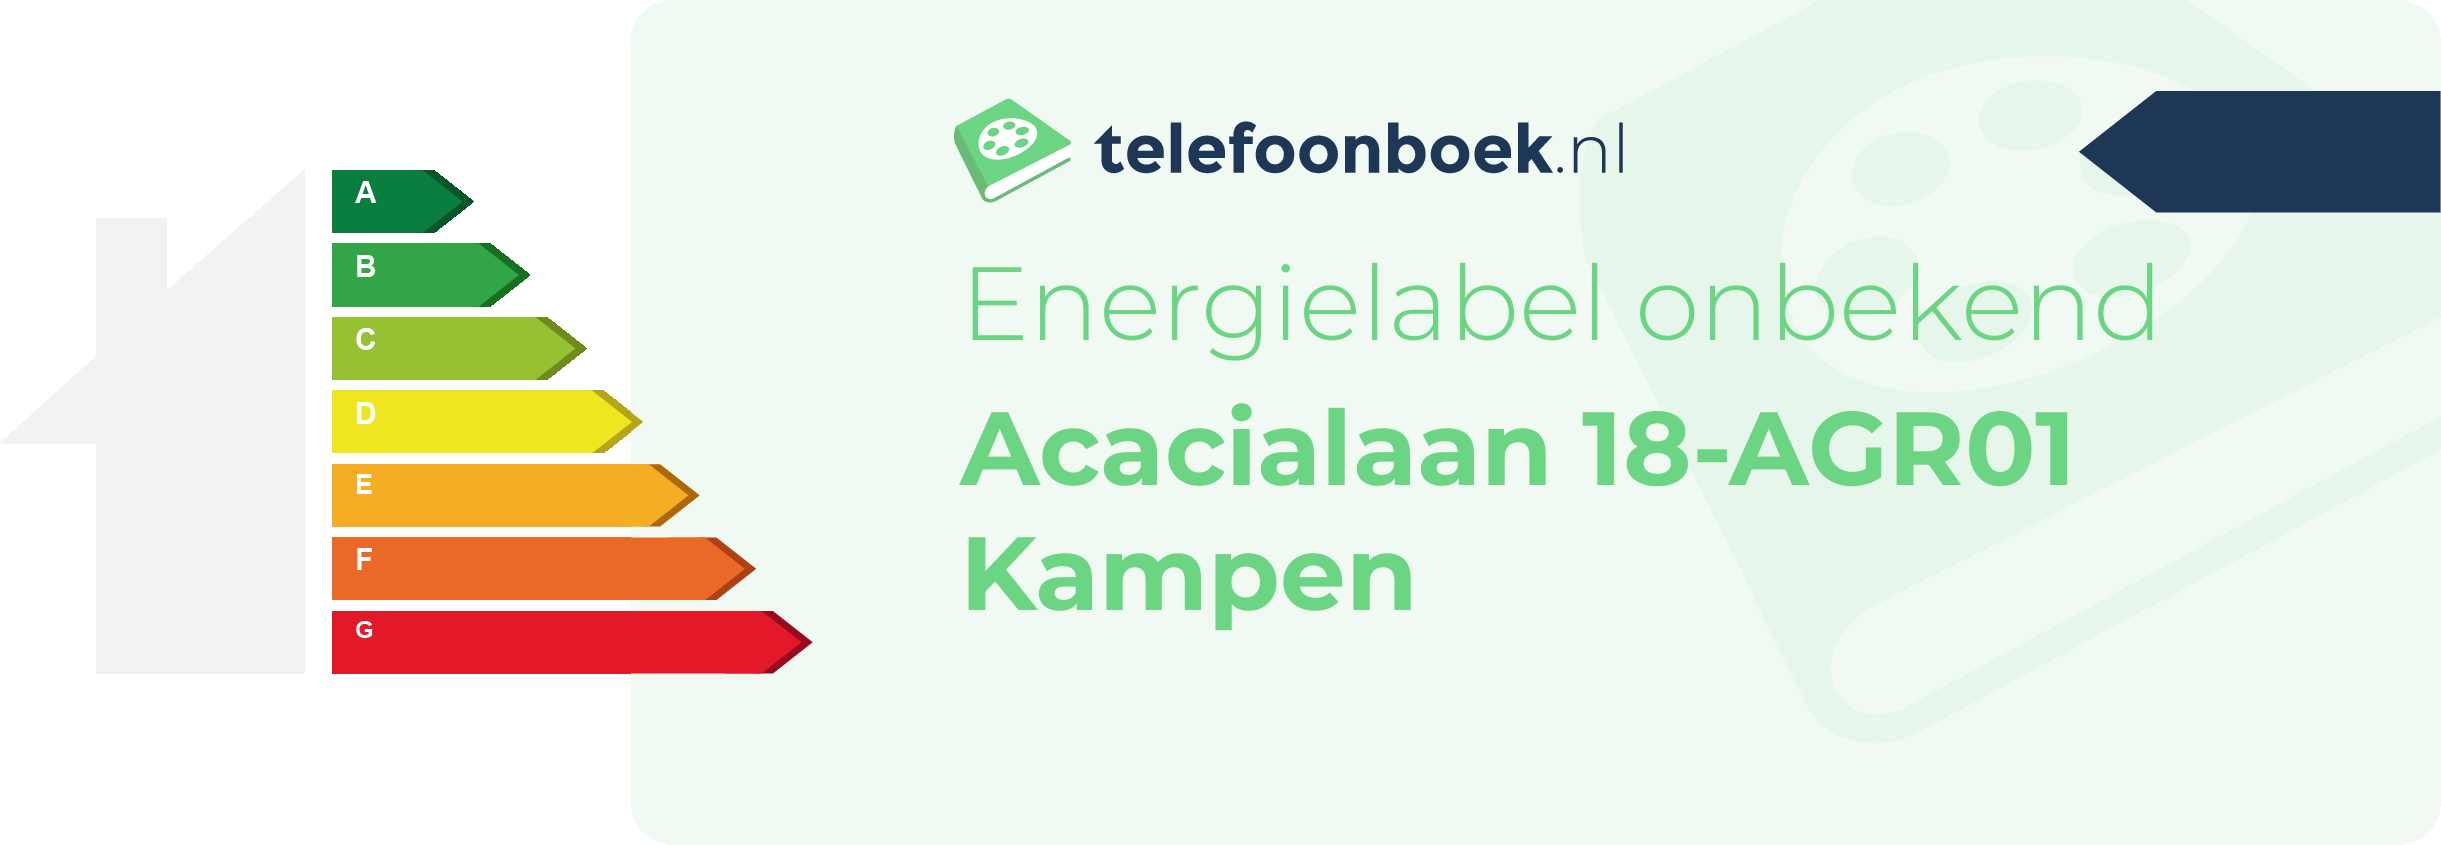 Energielabel Acacialaan 18-AGR01 Kampen